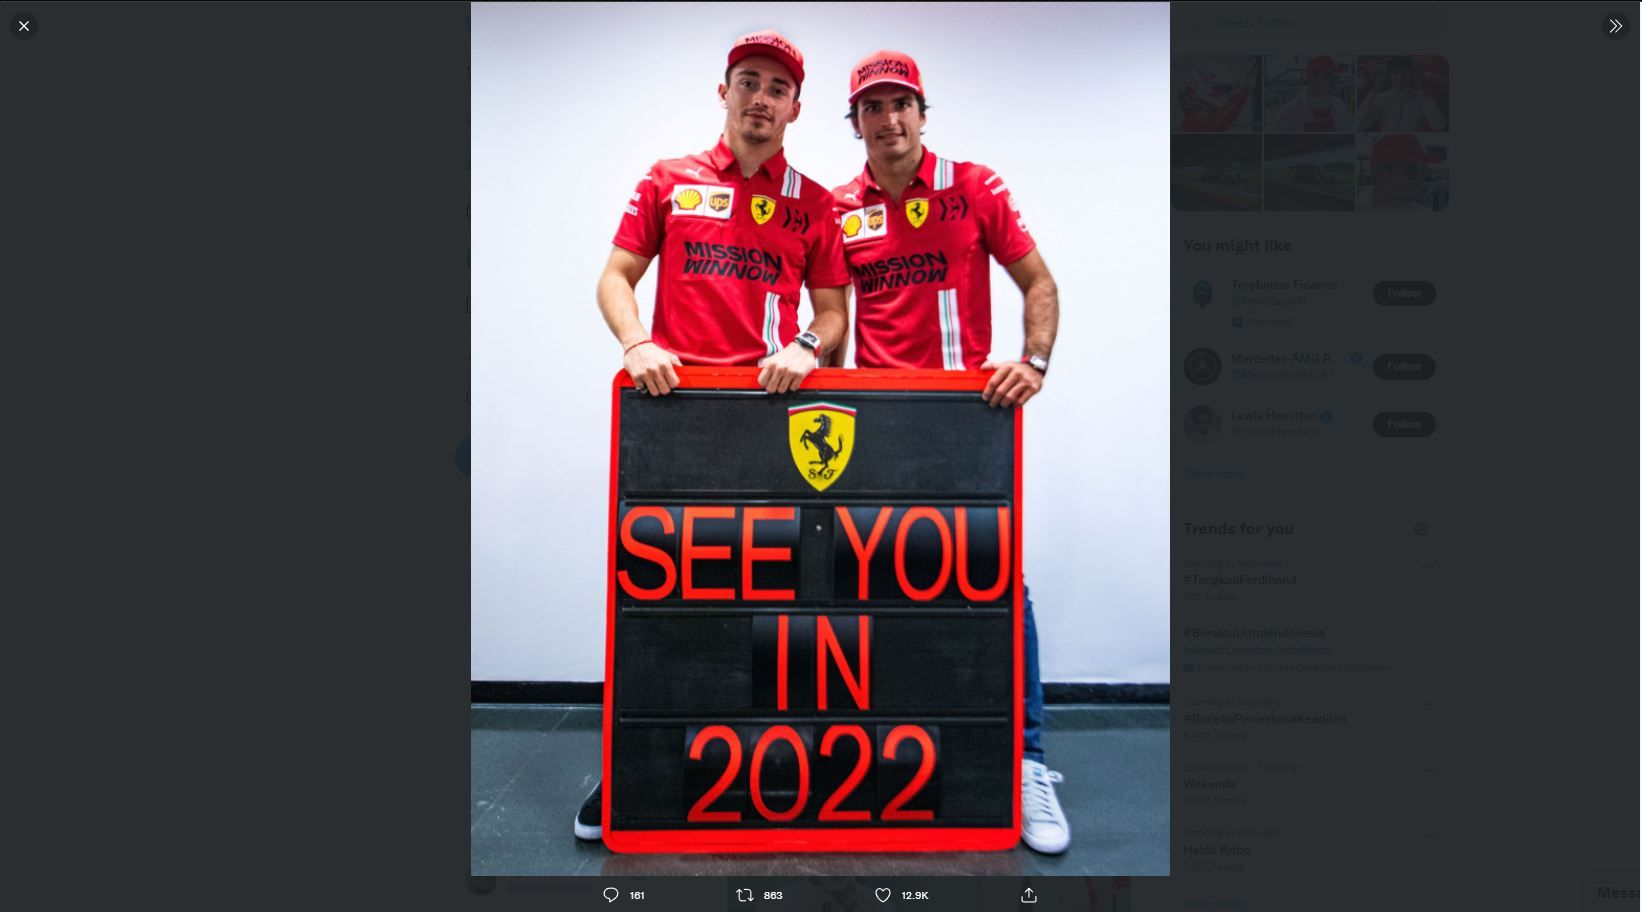 Ingin Kembalikan Kejayaan, Mattia Binoto Kembangkan Mesin Mobil Ferrari